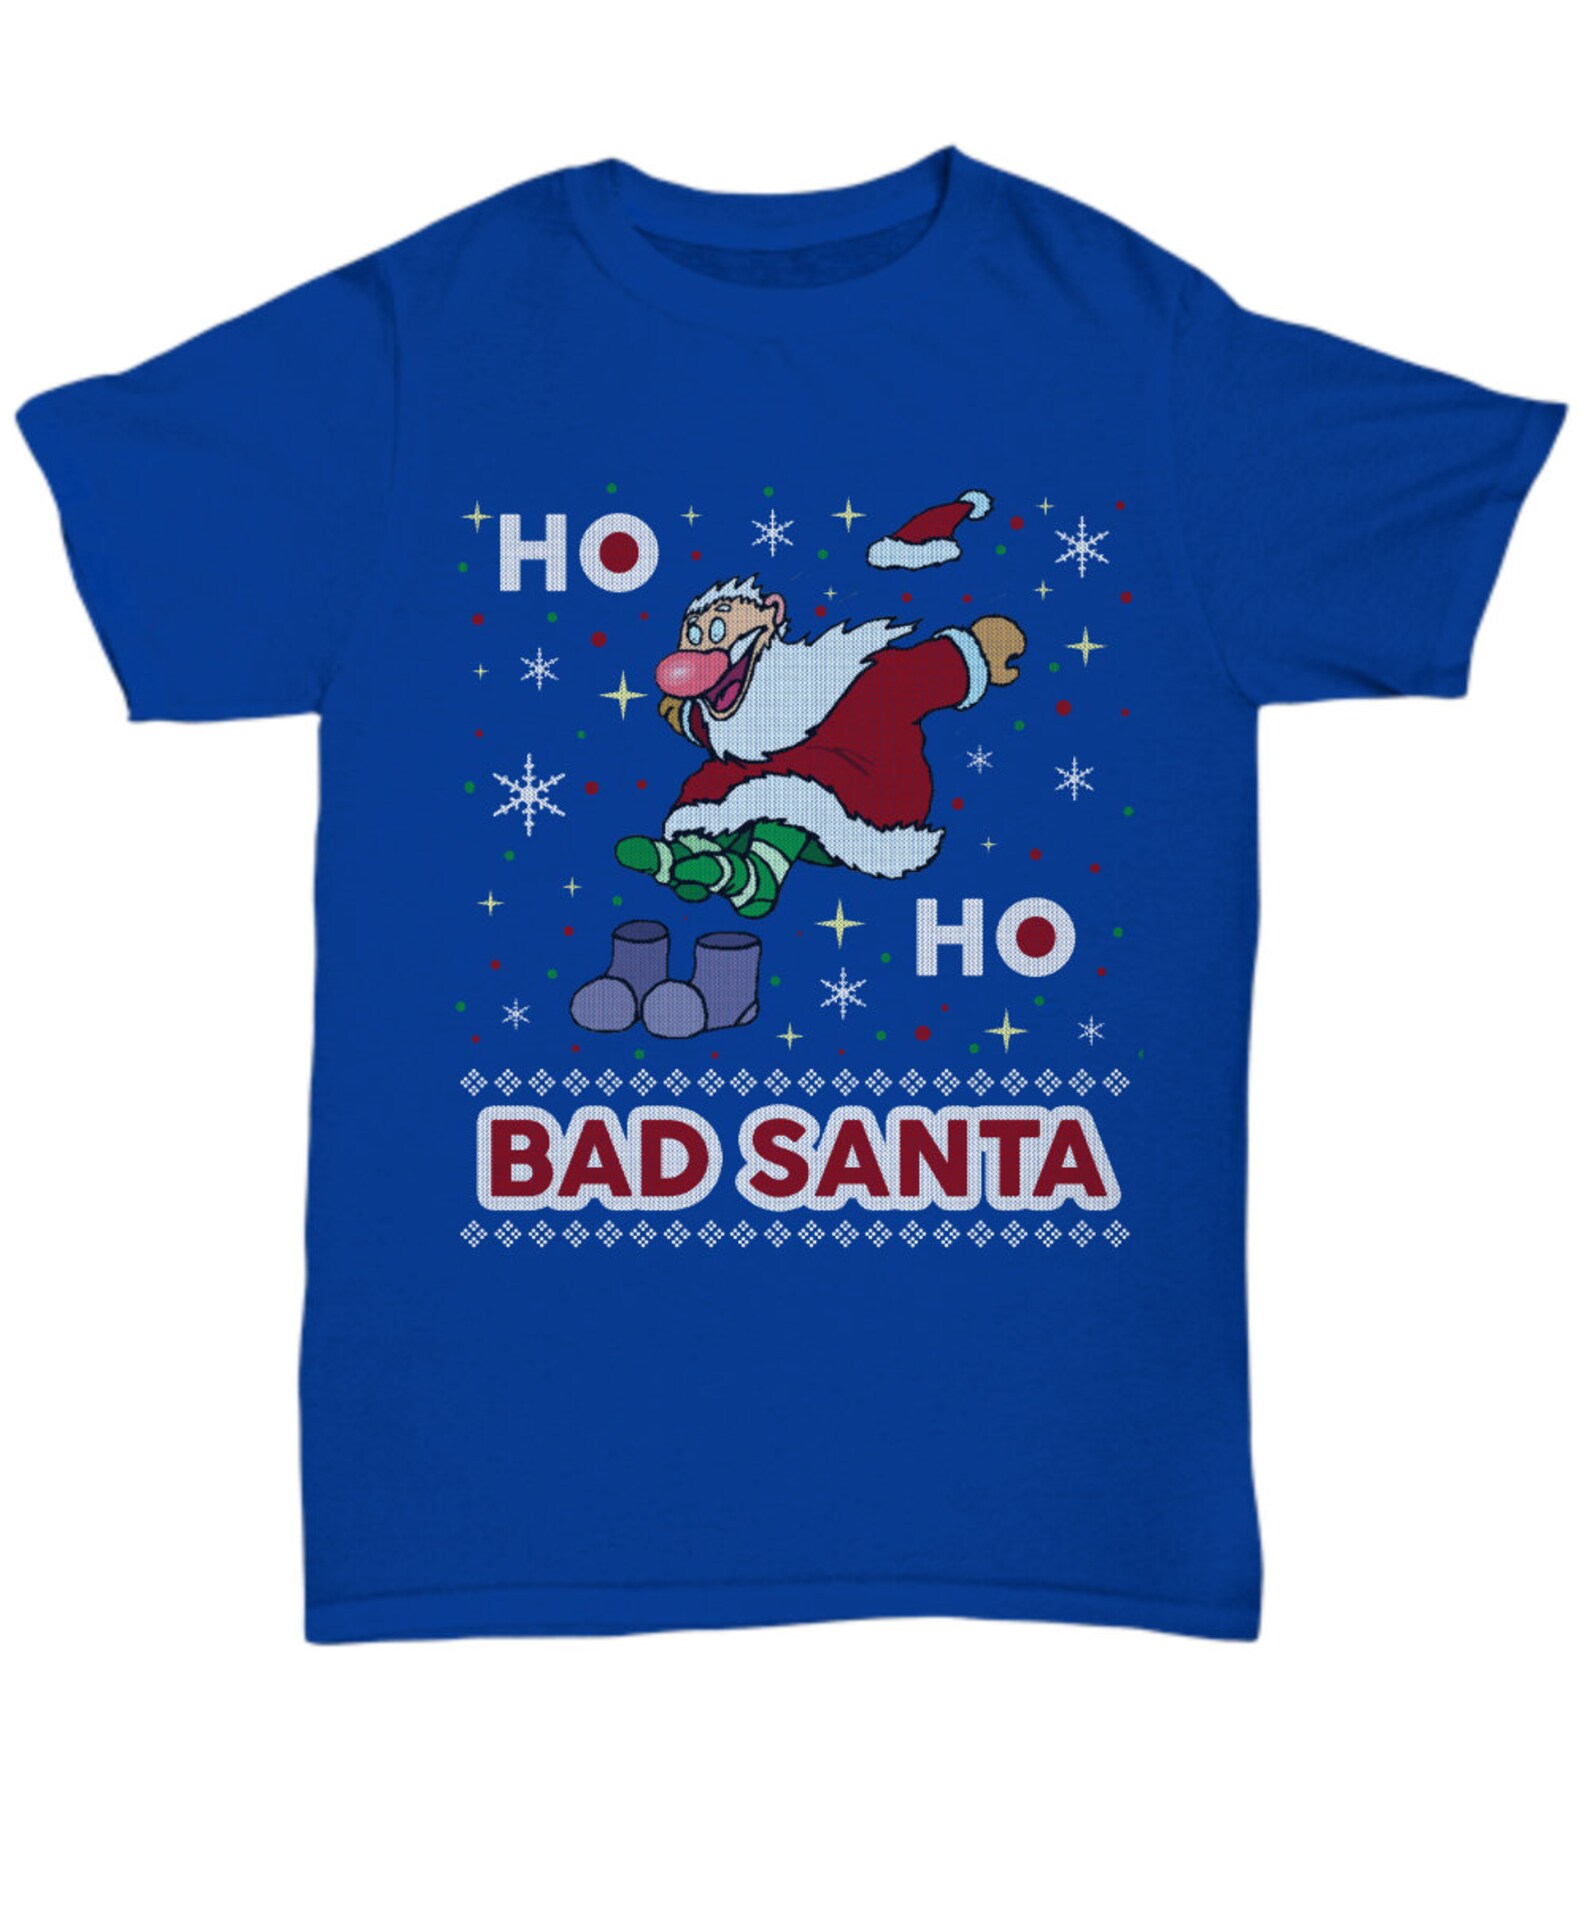 Bad Santa Christmas t shirtchristmas crew shirtcute | Etsy